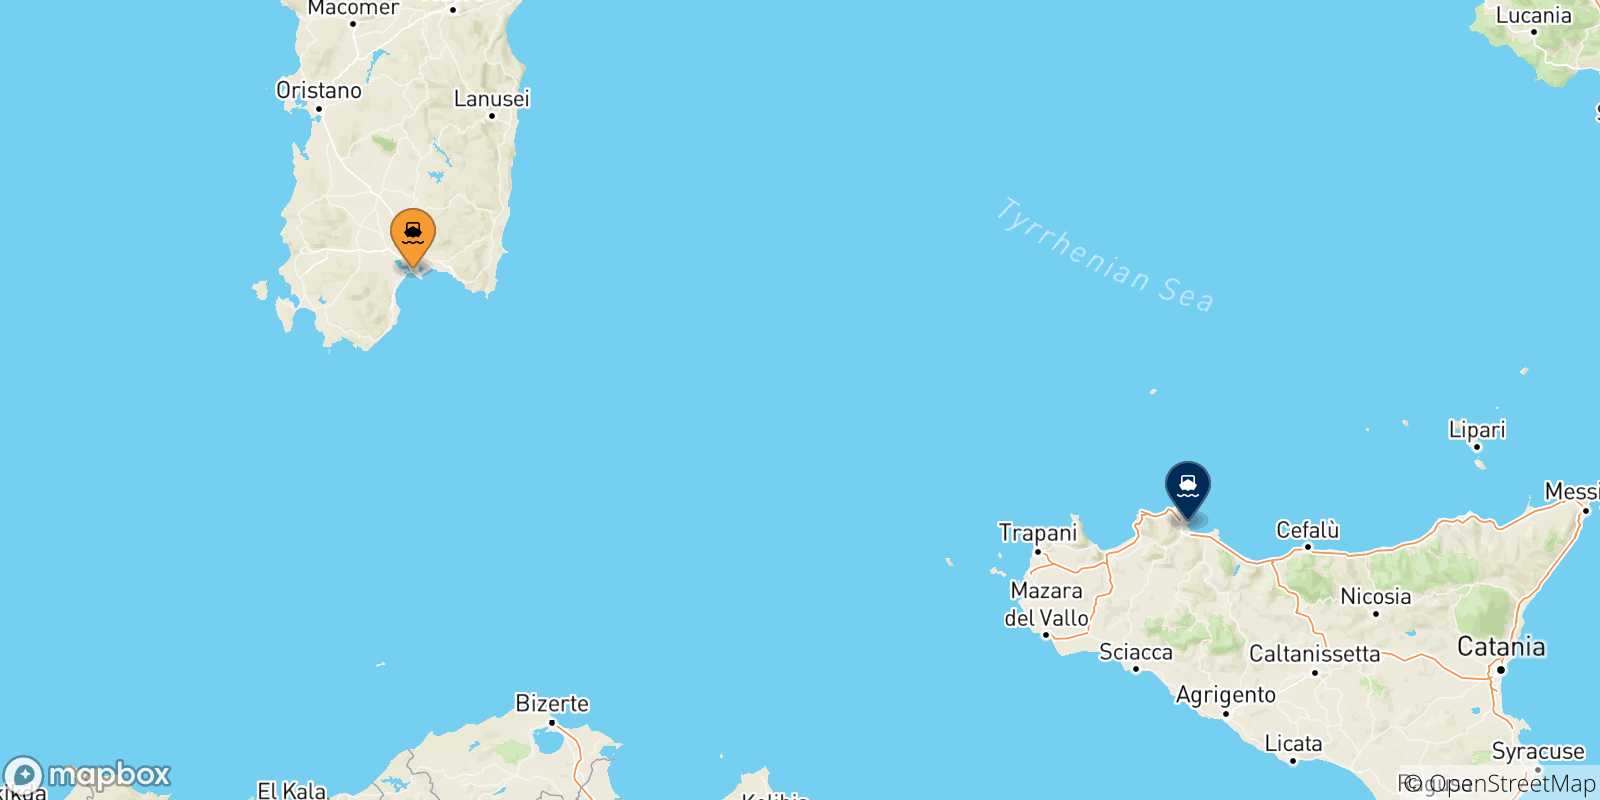 Mappa delle possibili rotte tra la Sardegna e la Sicilia